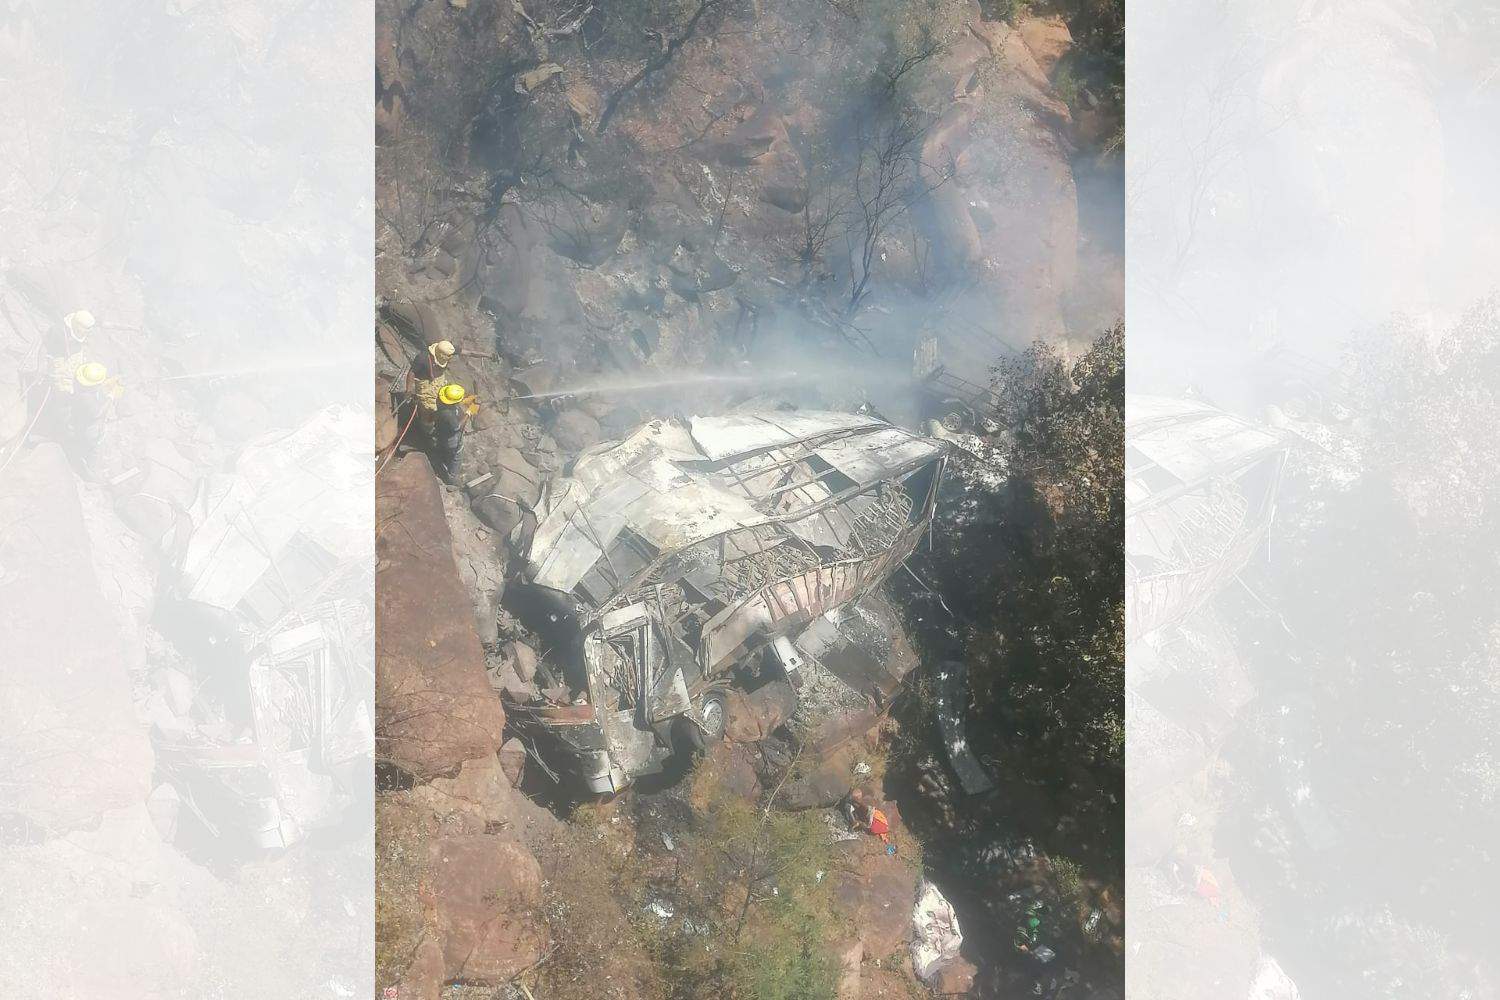 Tragic bus crash claims 45 lives in Limpopo جنوب أفريقيا .. حادث مروري يخلف عشرات القتلي والجرحي 